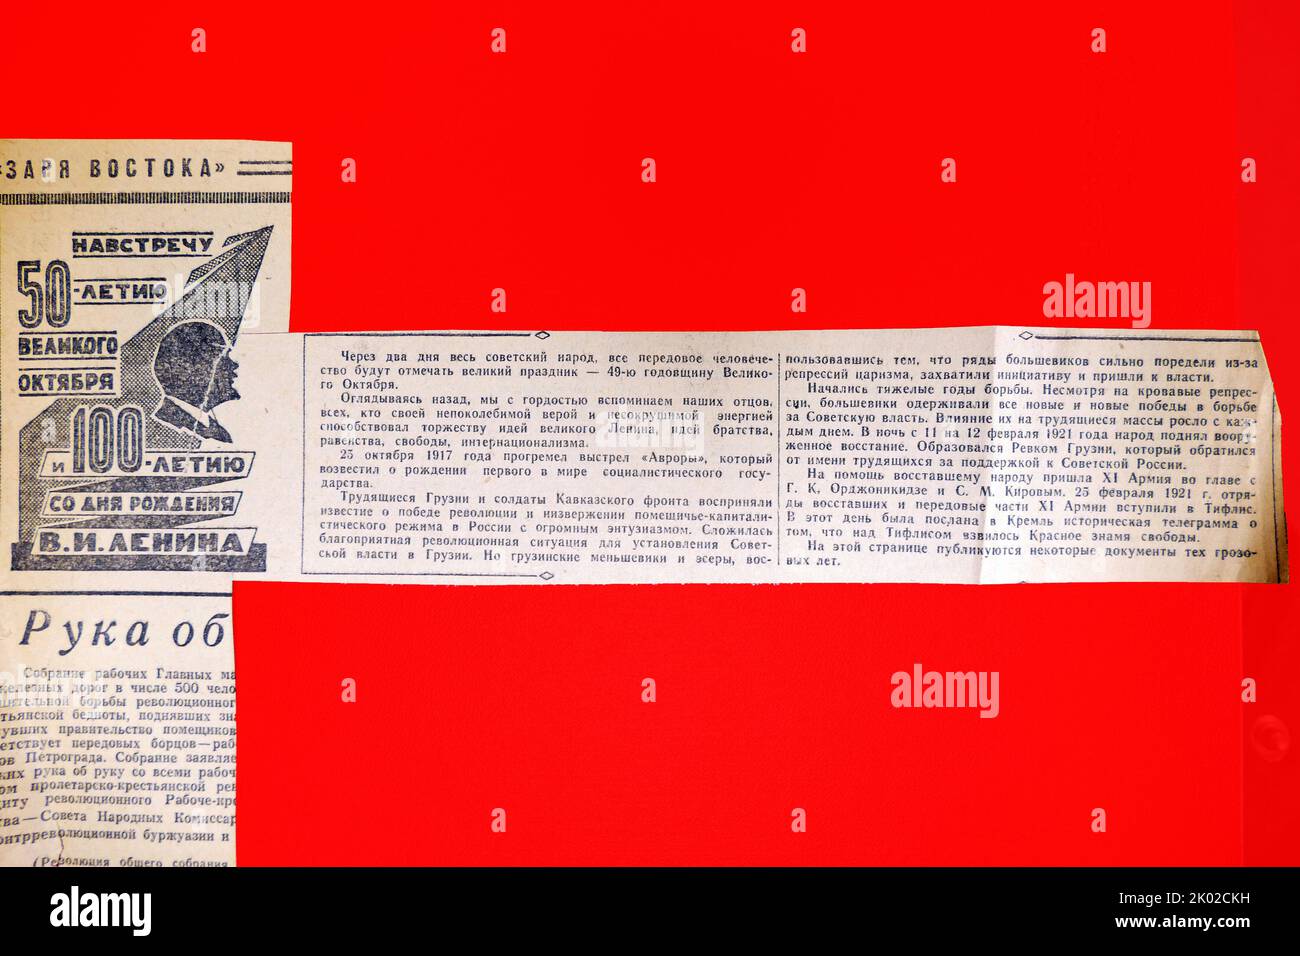 Annuncio di giornale sovietico che segna il 50th° anniversario del Grande Ottobre e 100 anni dalla nascita di V.I. Lenin&#13;&#10; Foto Stock